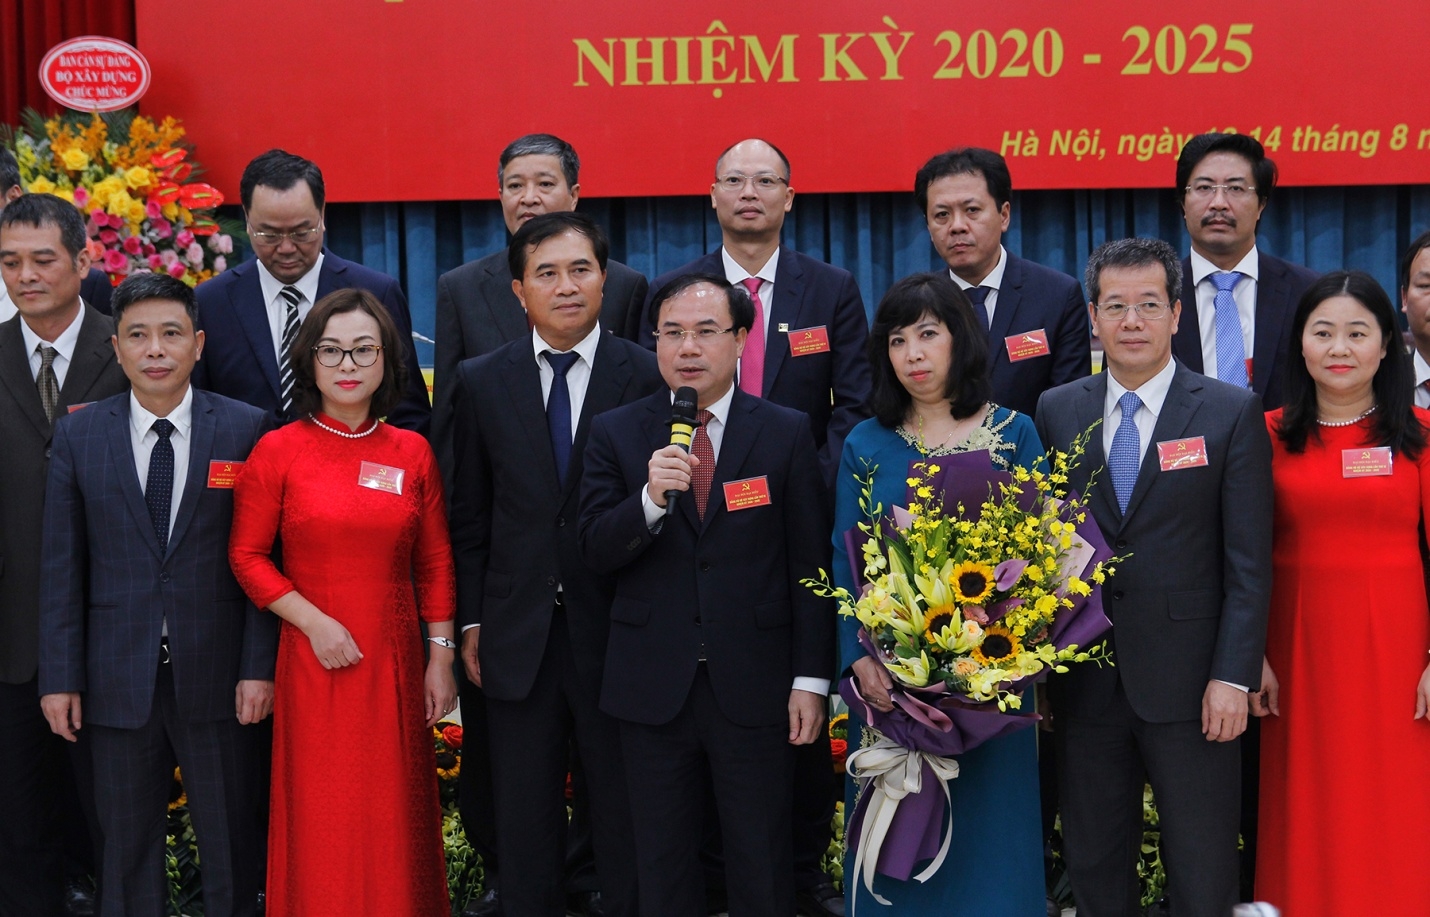 Thứ trưởng Bộ Xây dựng Nguyễn Văn Sinh được bầu làm Bí thư Đảng ủy Bộ Xây dựng nhiệm kỳ 2020 - 2025.